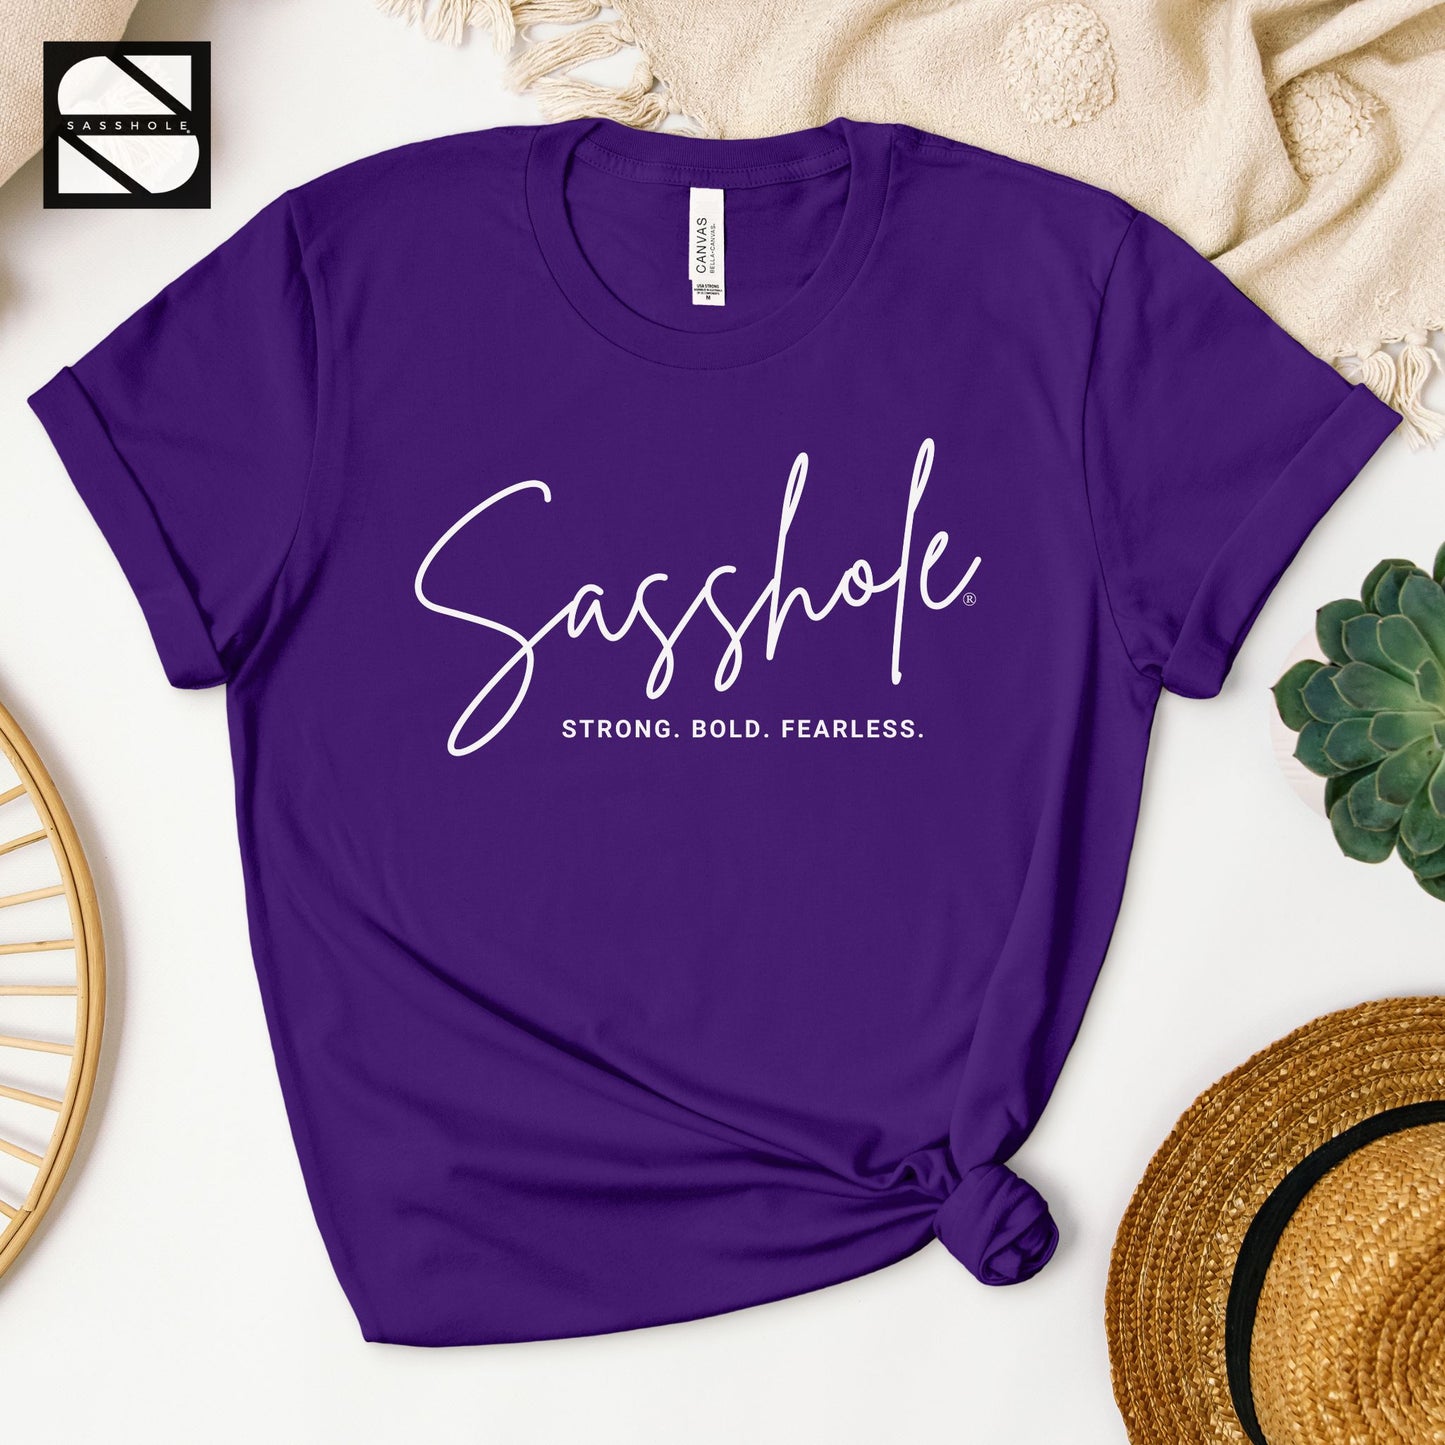 motivational purple shirt for women